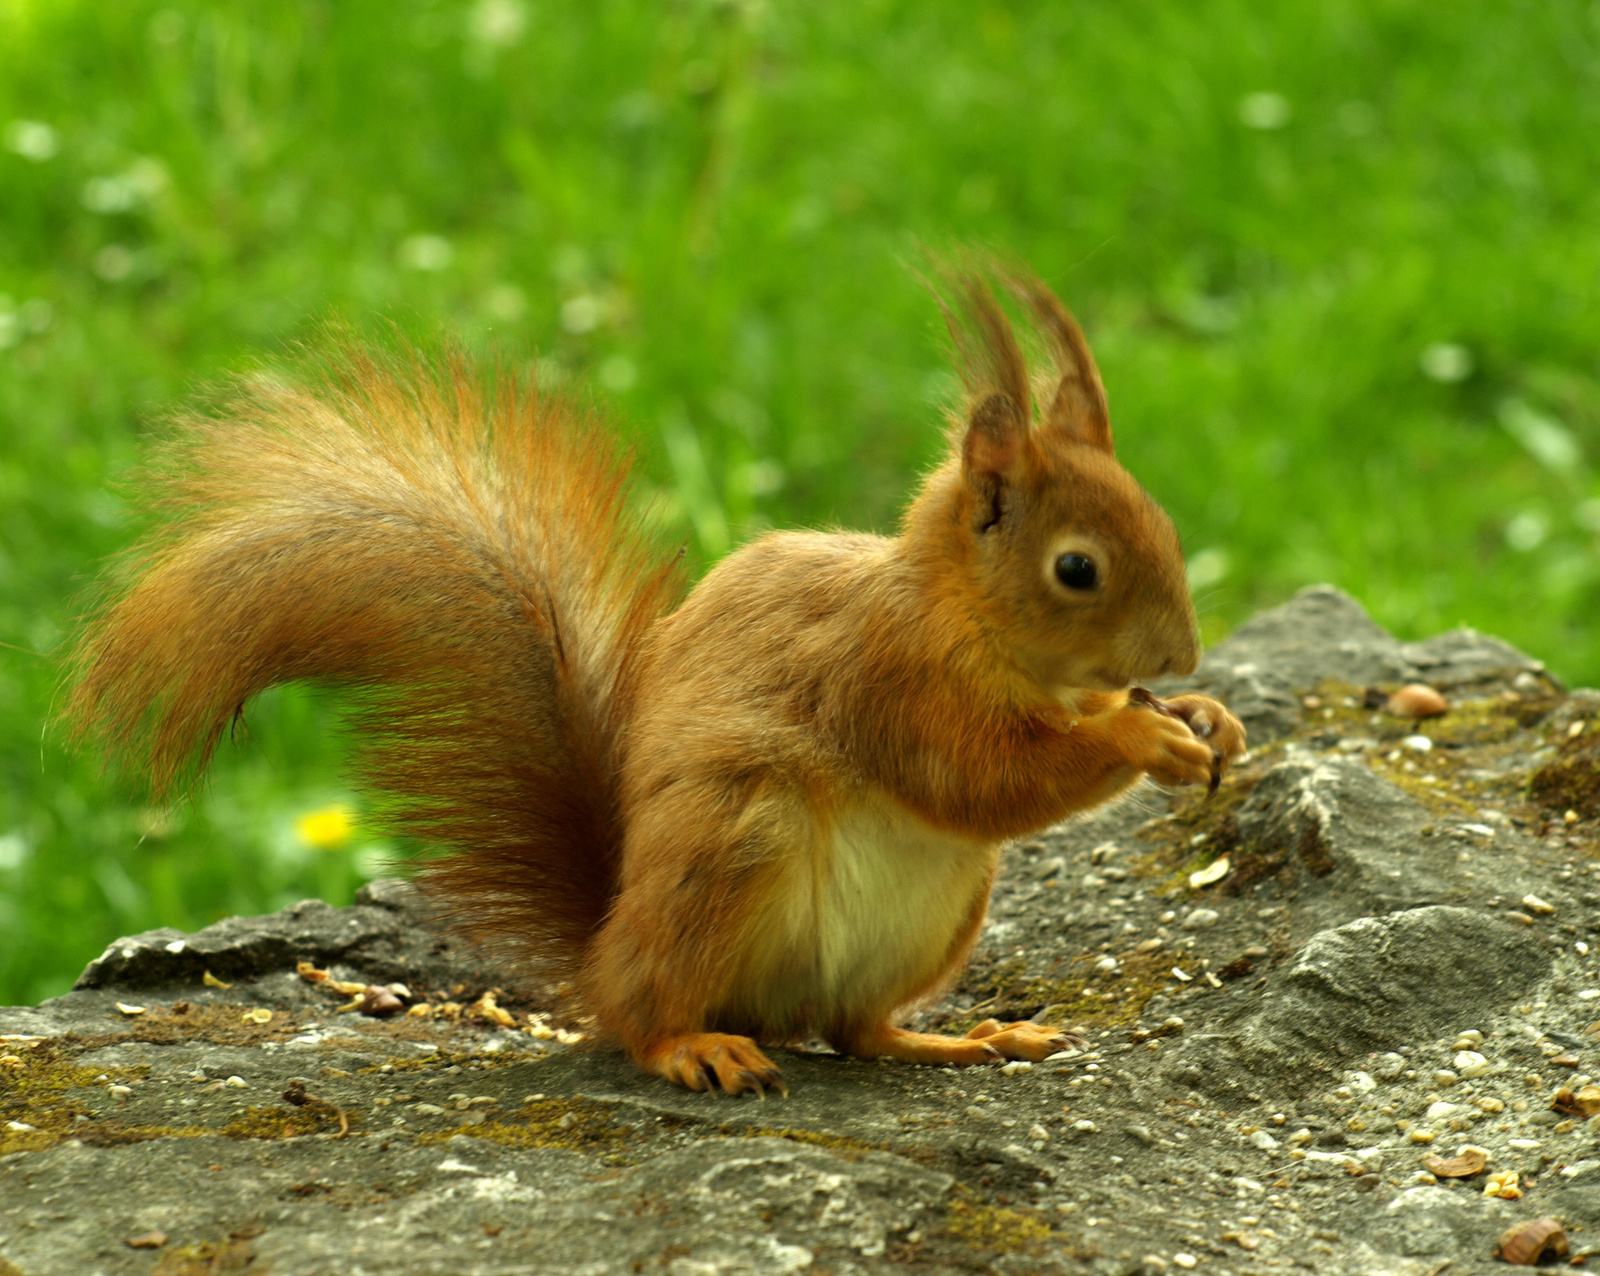 másik mókus!:):)